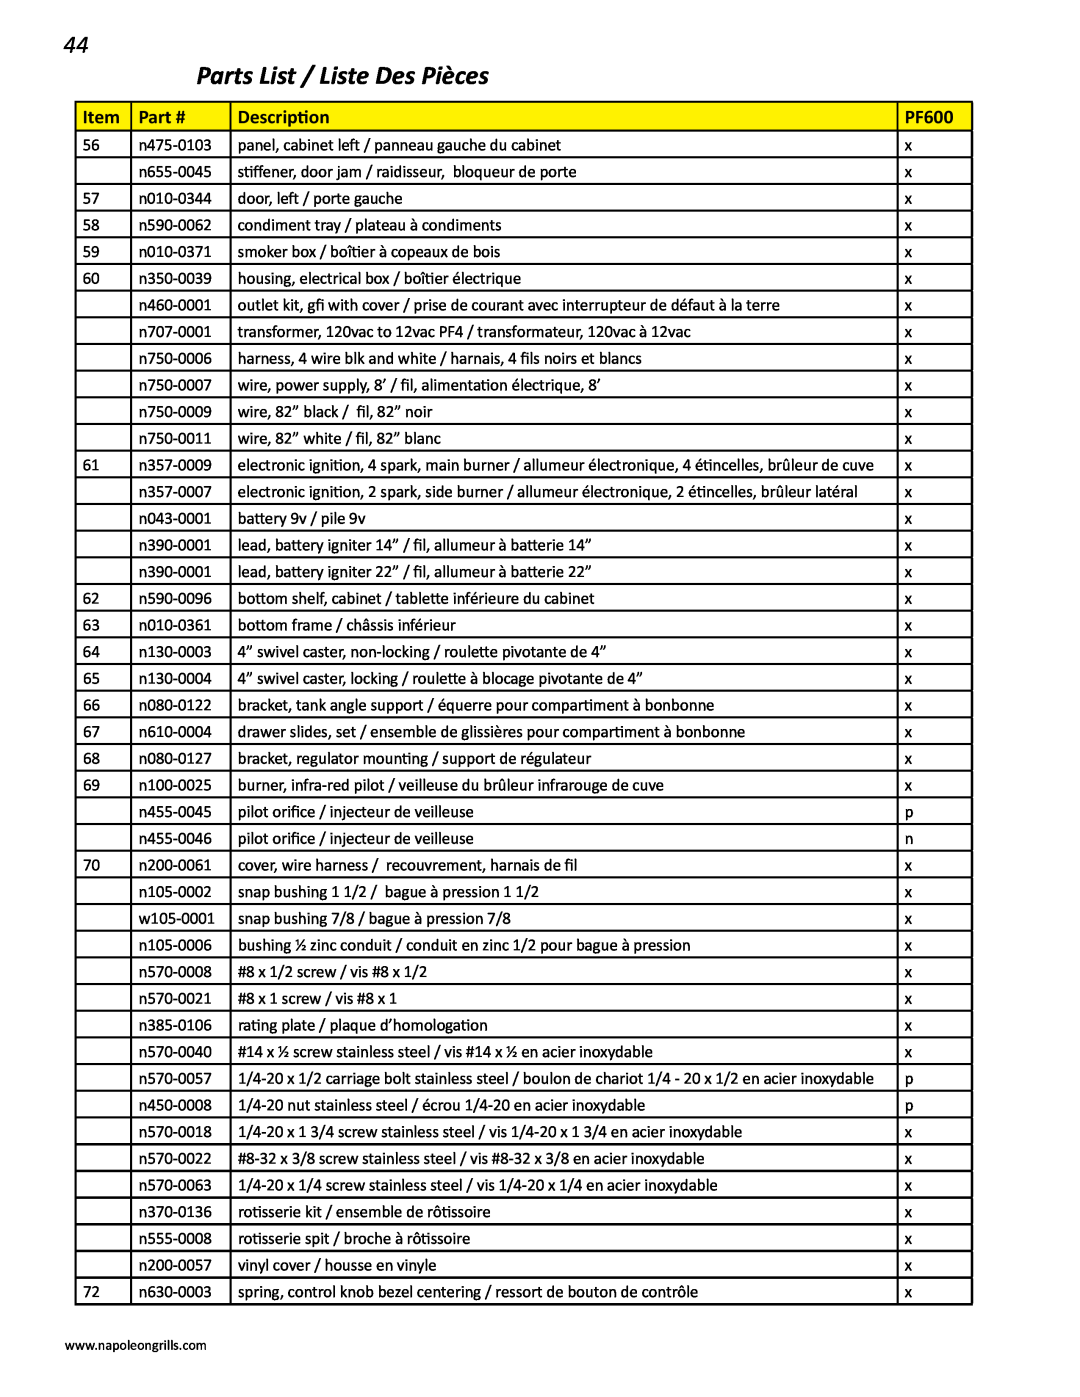 Napoleon Grills V 600, V 450 manual Parts List / Liste Des Pièces, n475-0103 